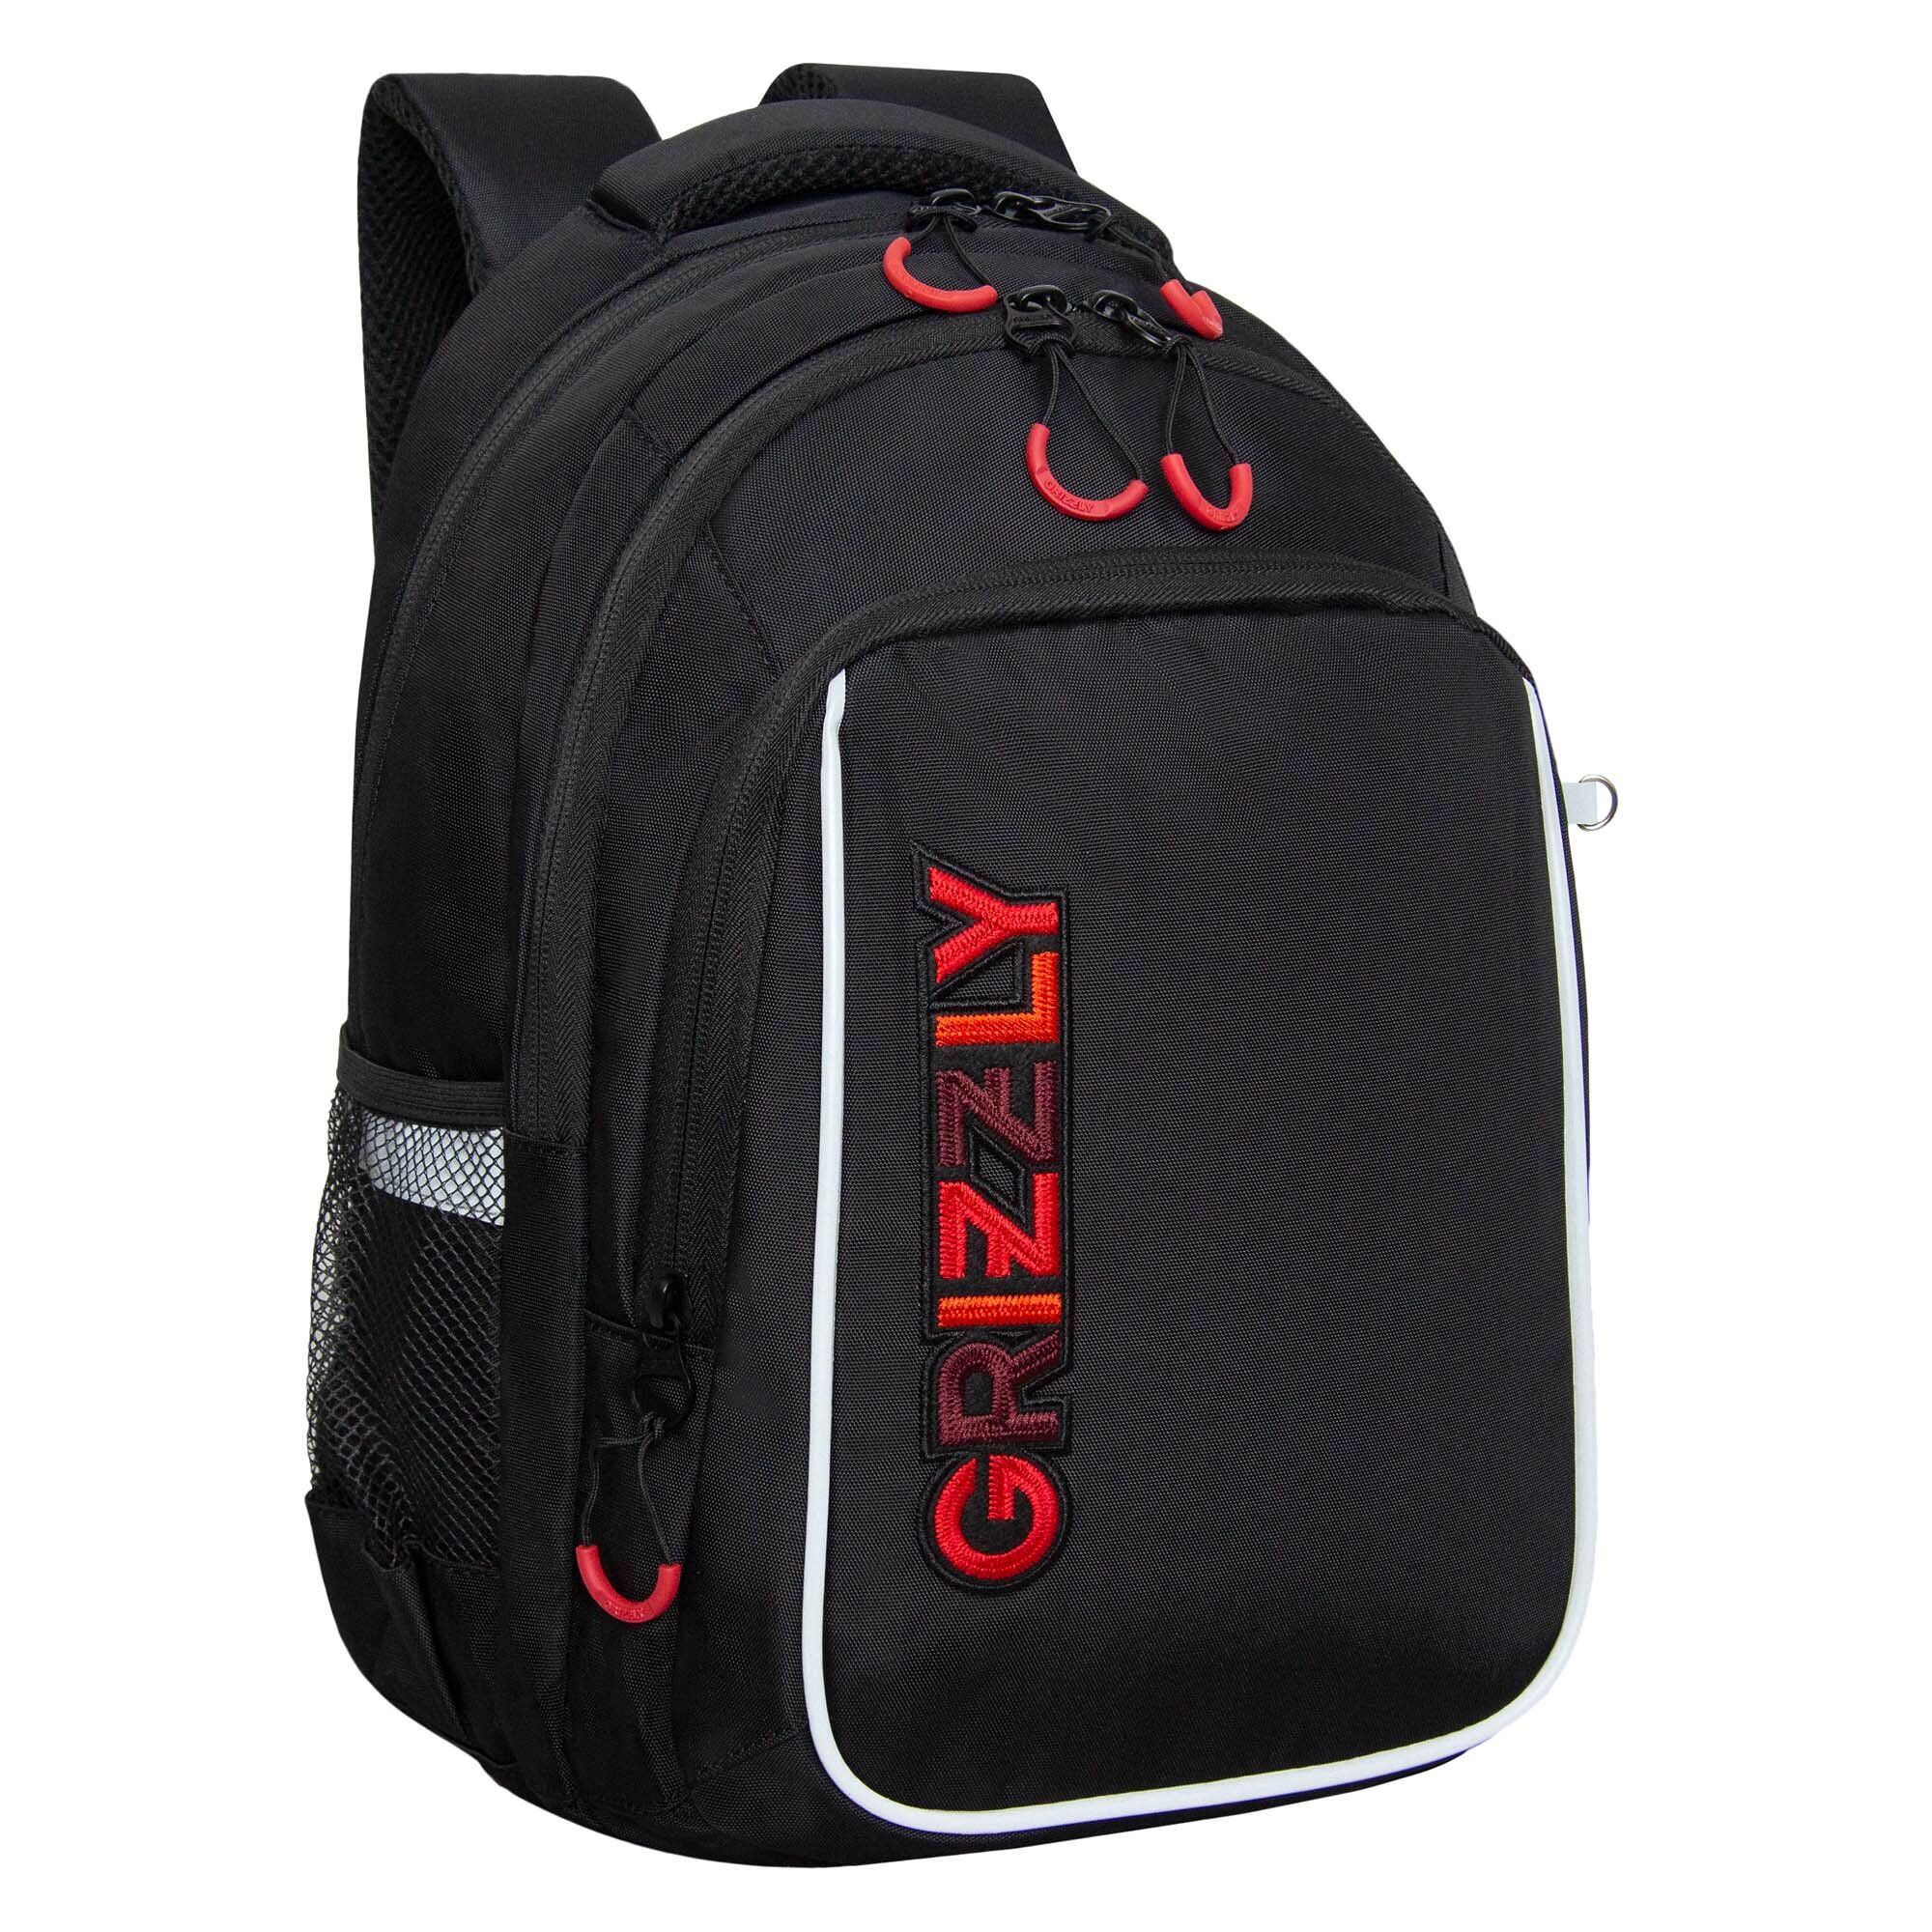 Рюкзак школьный с карманом для ноутбука 13", анатомической спинкой, для мальчика RB-352-4/1